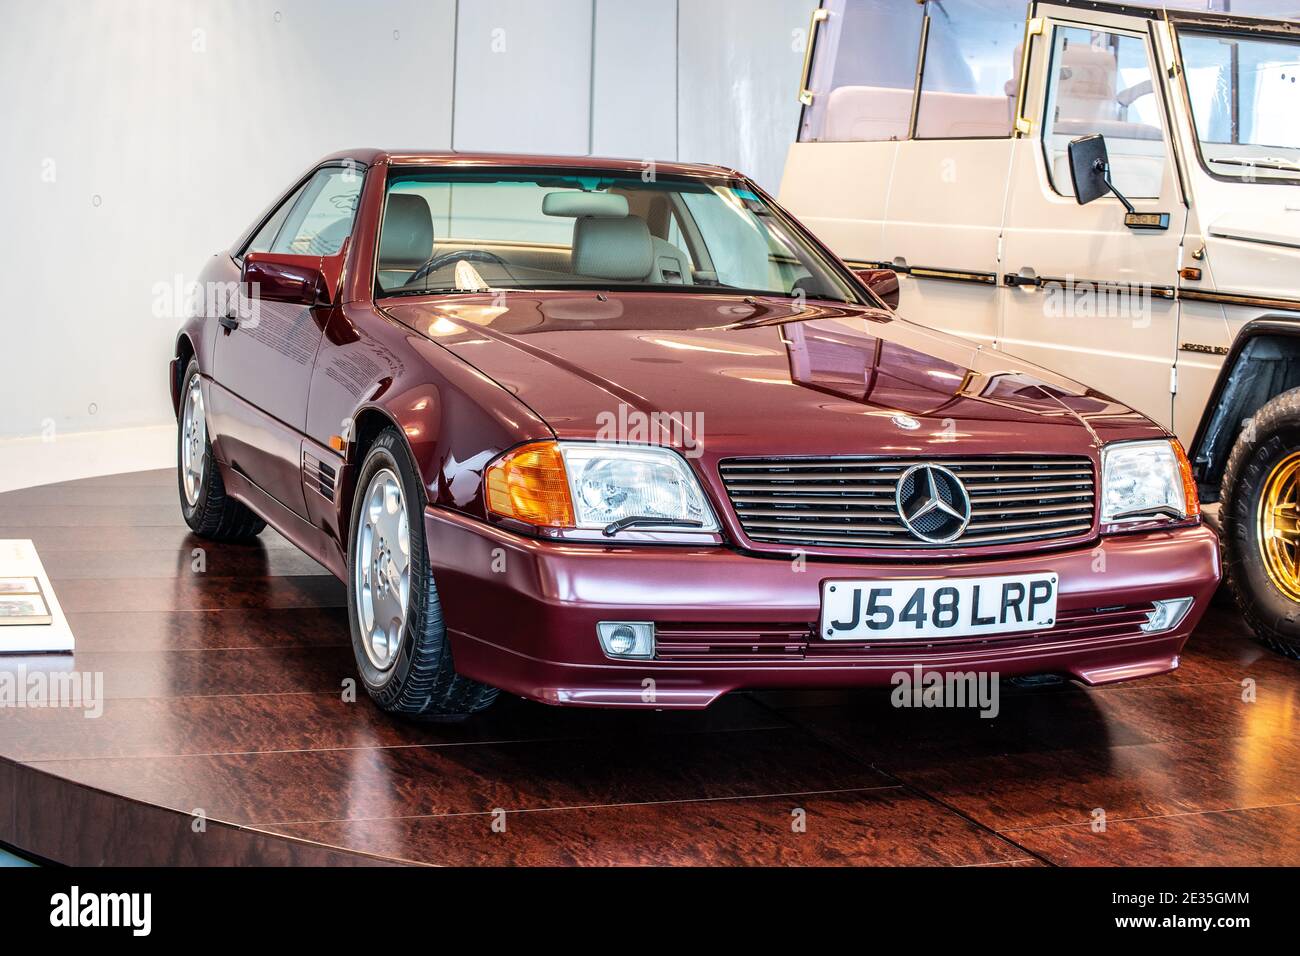 STUTTGART, GERMANY, 2019: 1991 Mercedes-Benz 500 SL in the Mercedes-Benz Museum, J548 LRP Stock Photo